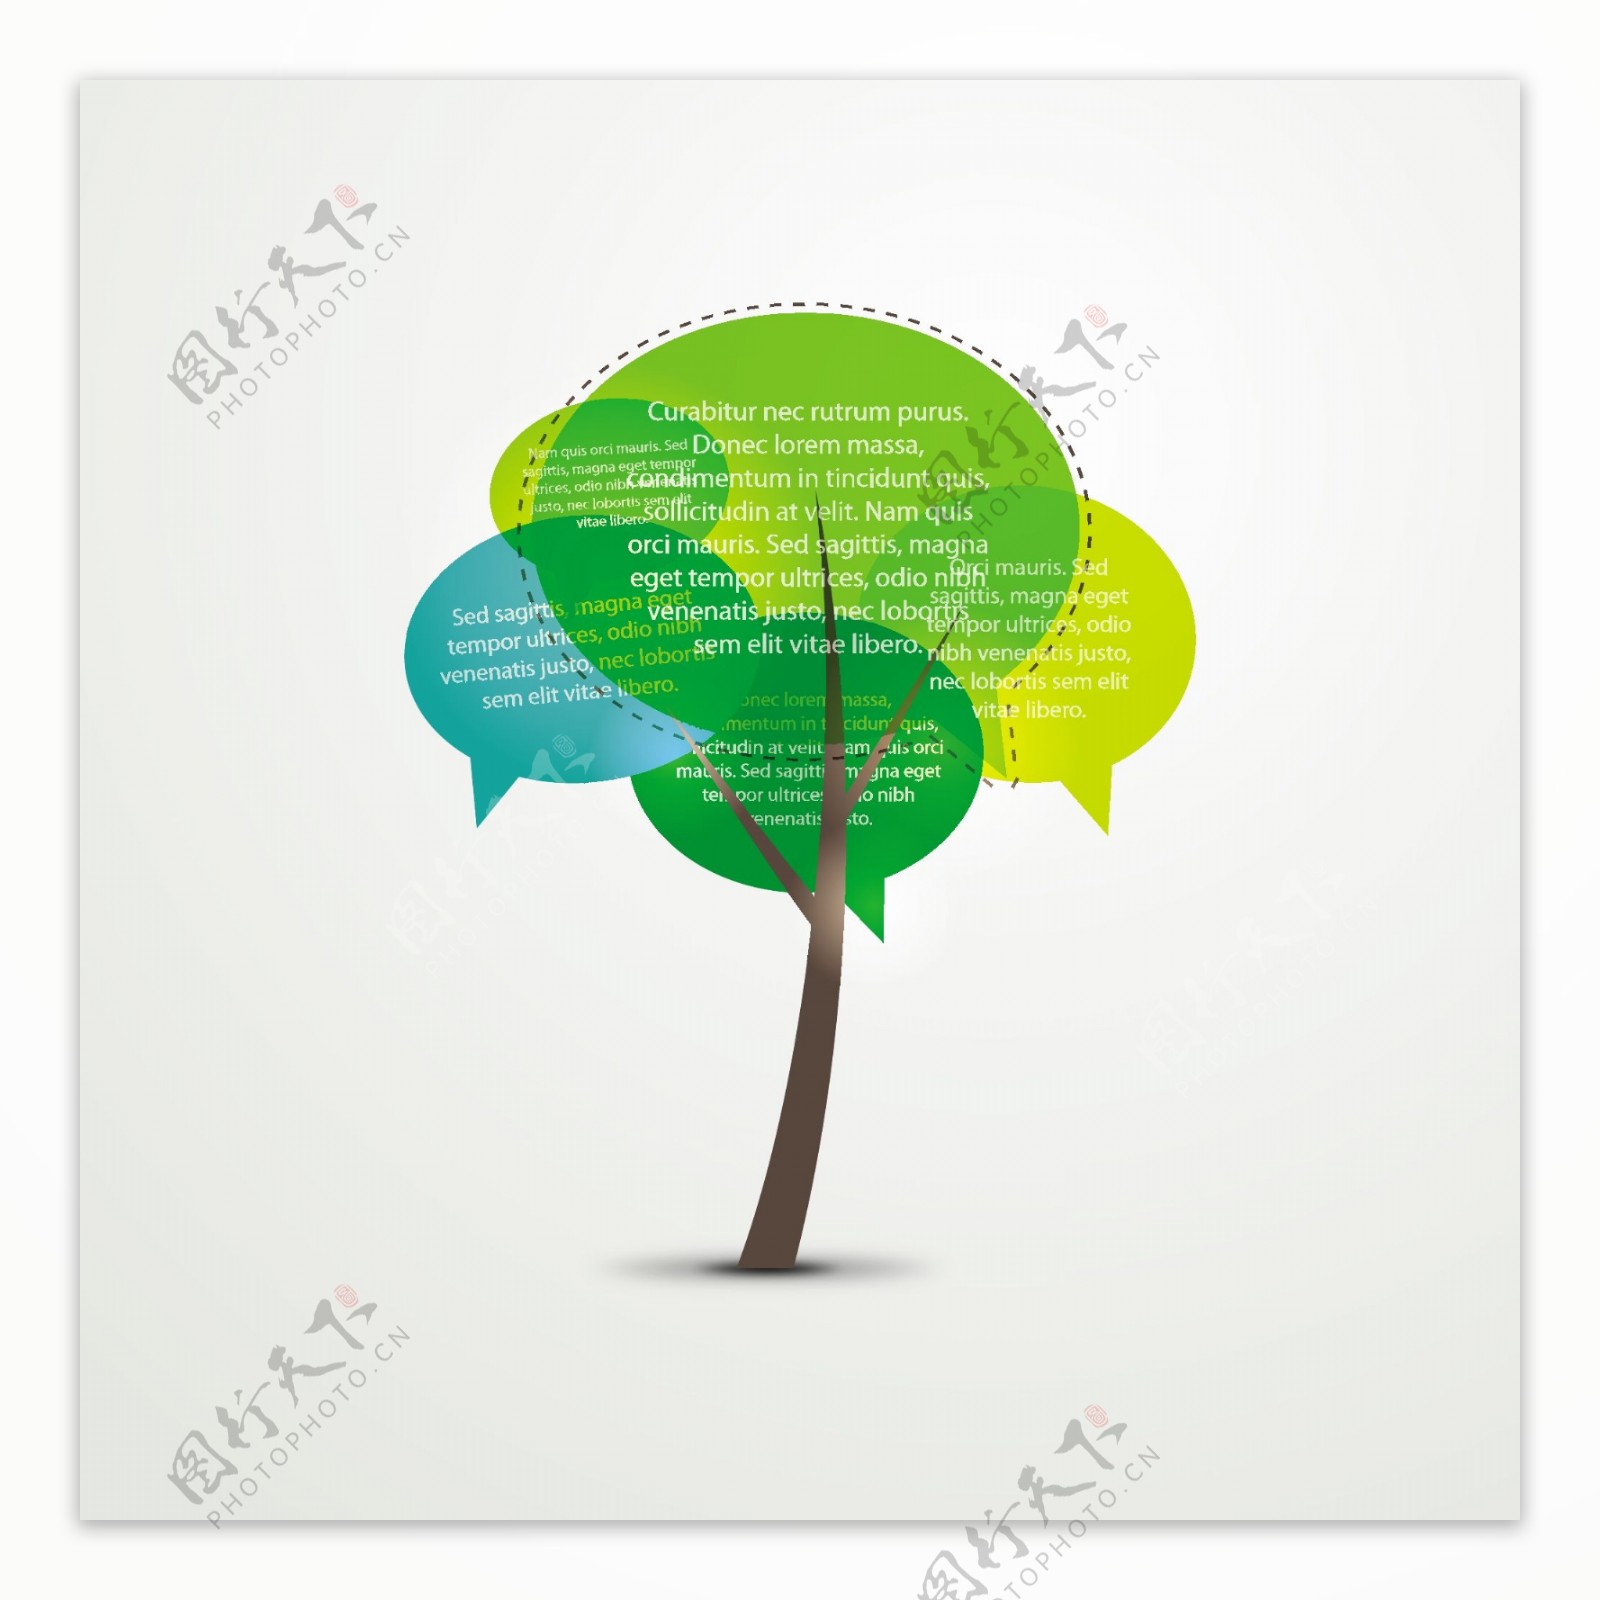 抽象彩色对话框树木